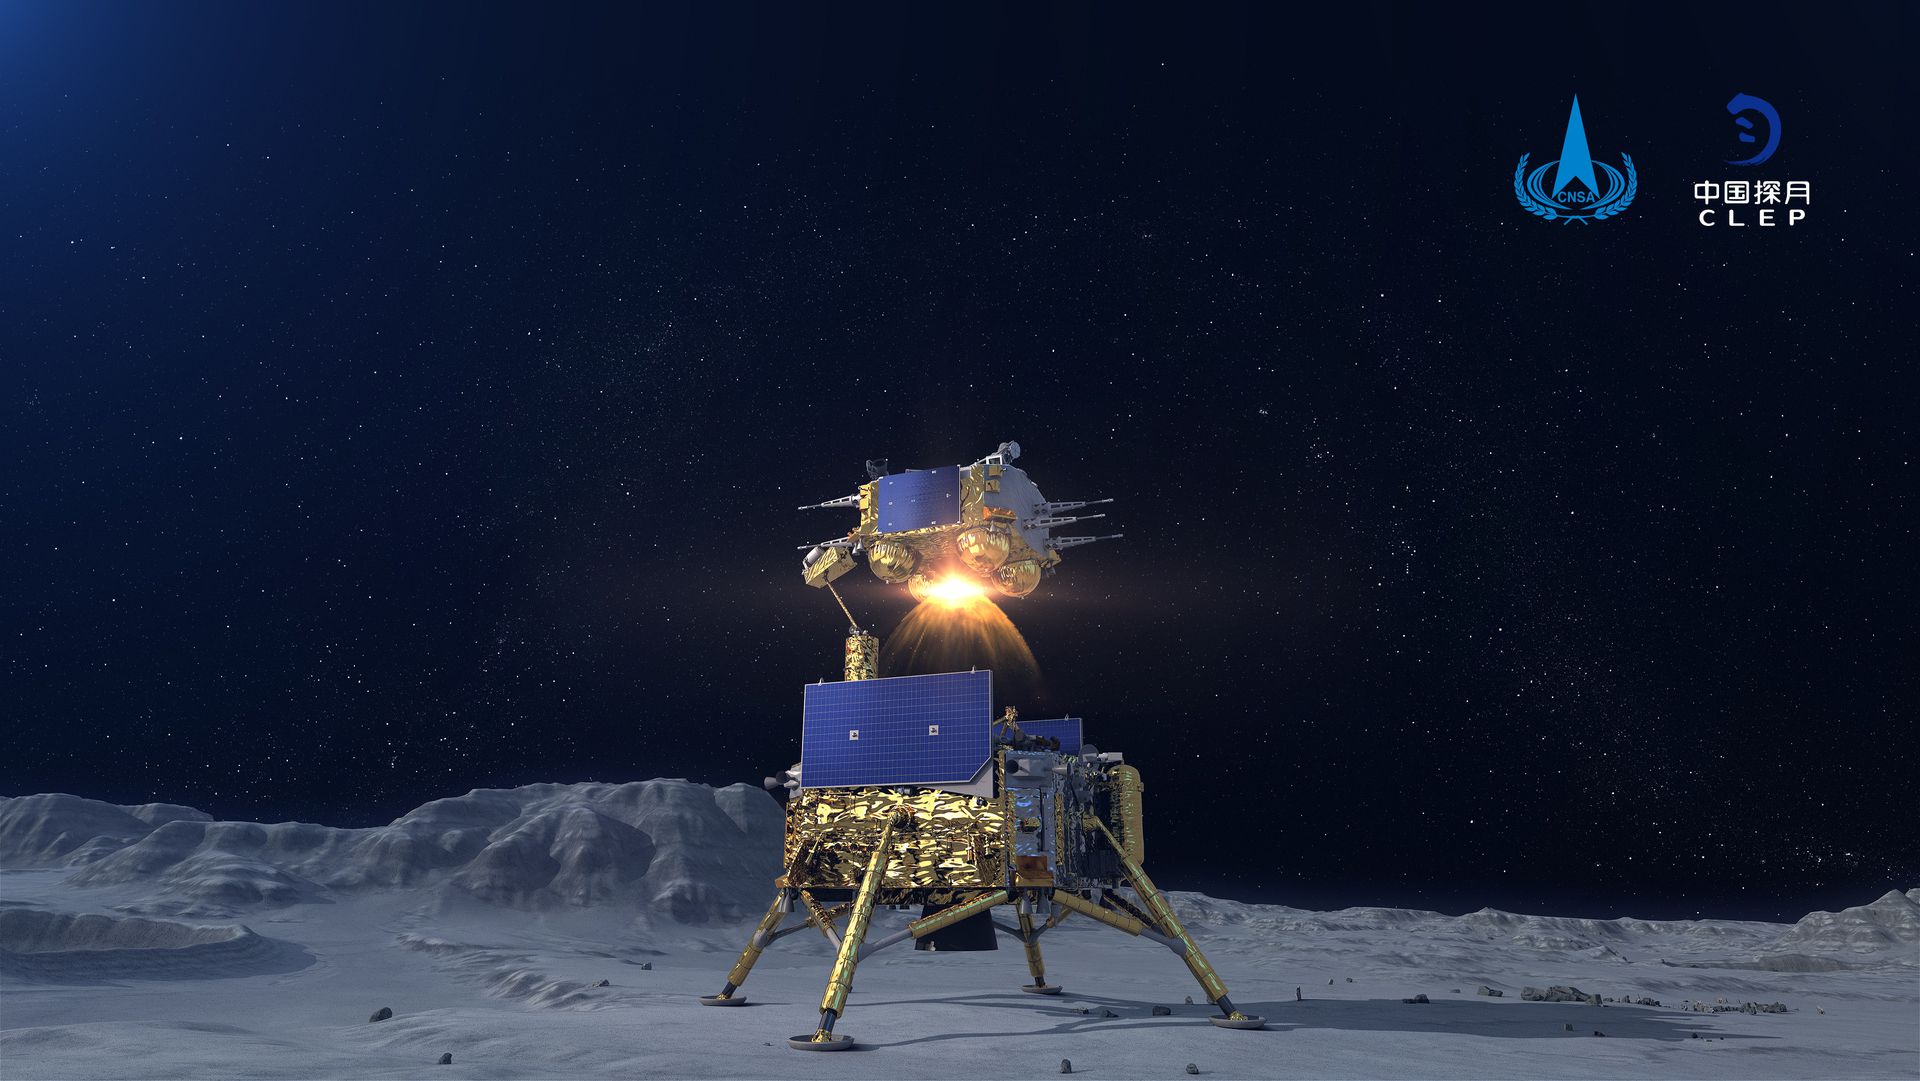 2020年12月3日，嫦娥五号探测器顺利完成月球表面自动采样升空返航。这是嫦娥五号上升器月面点火瞬间模拟图。（新华社）